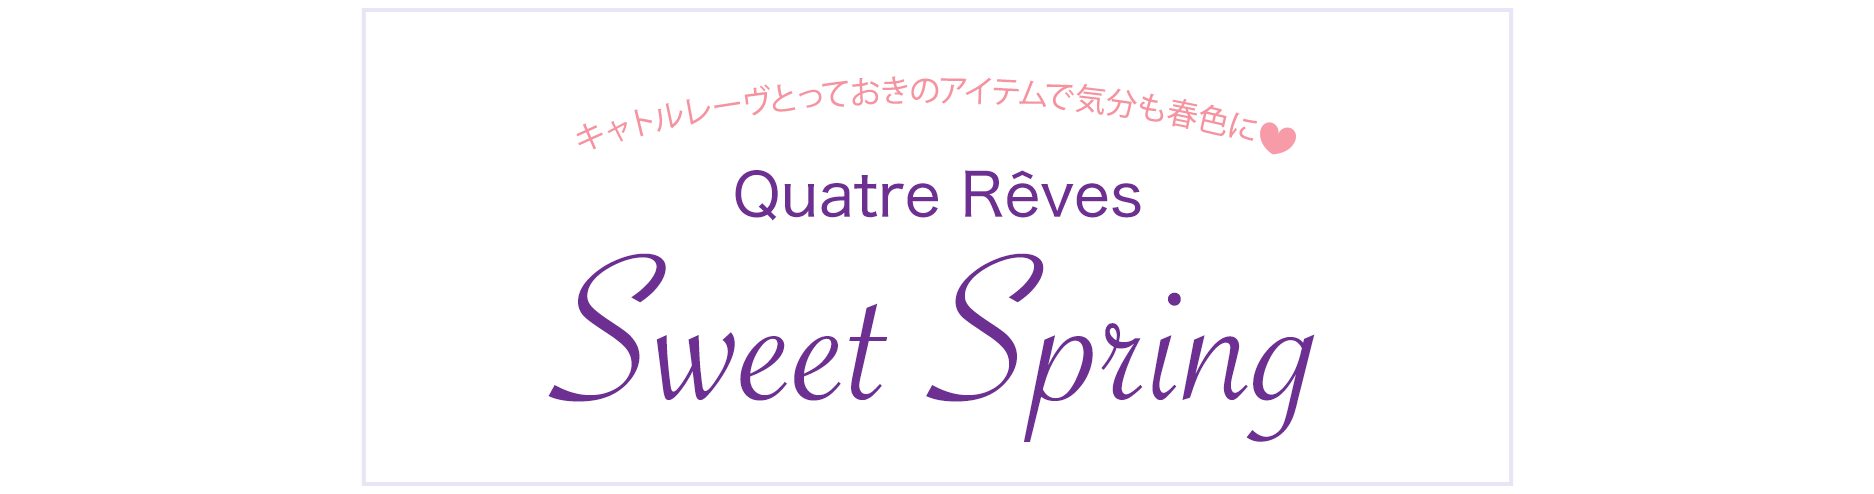 キャトルレーヴとっておきのアイテムで気分も春色に Quatre Reves Sweet Spring